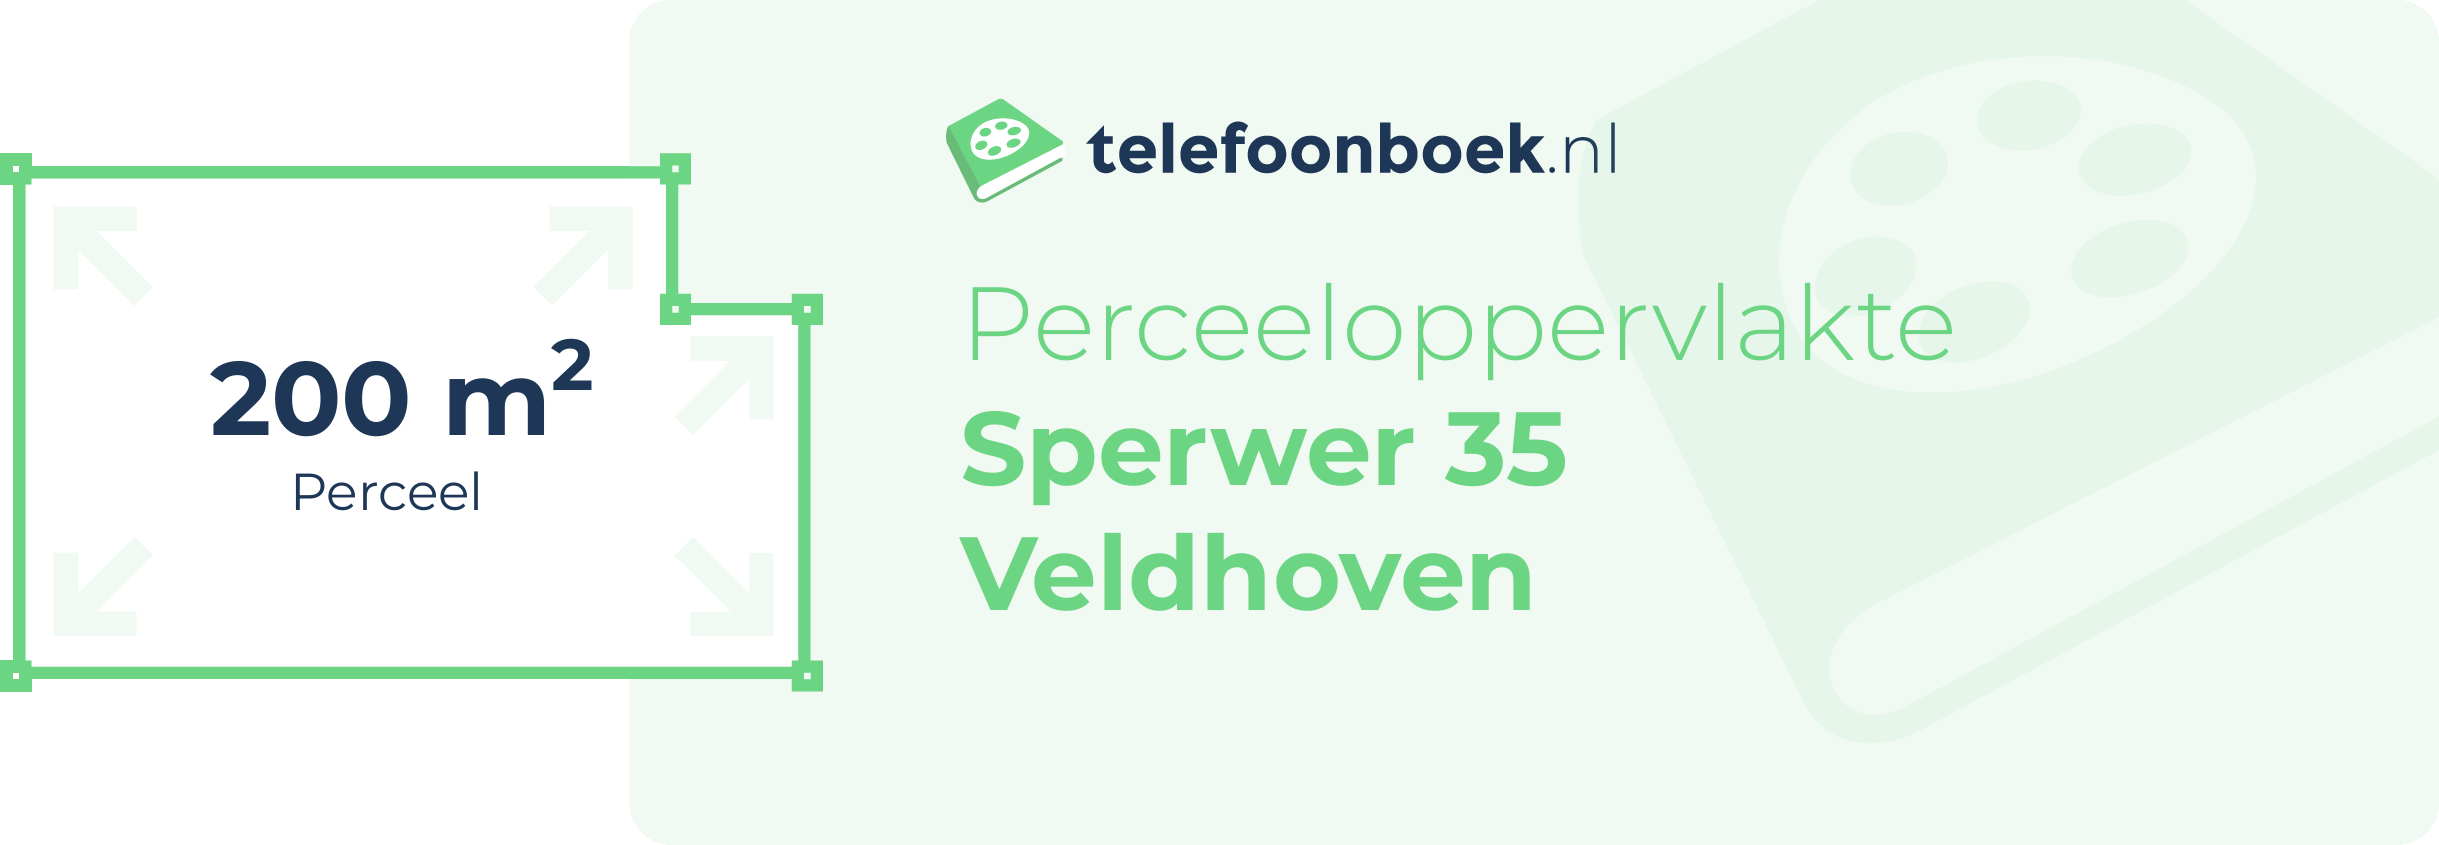 Perceeloppervlakte Sperwer 35 Veldhoven